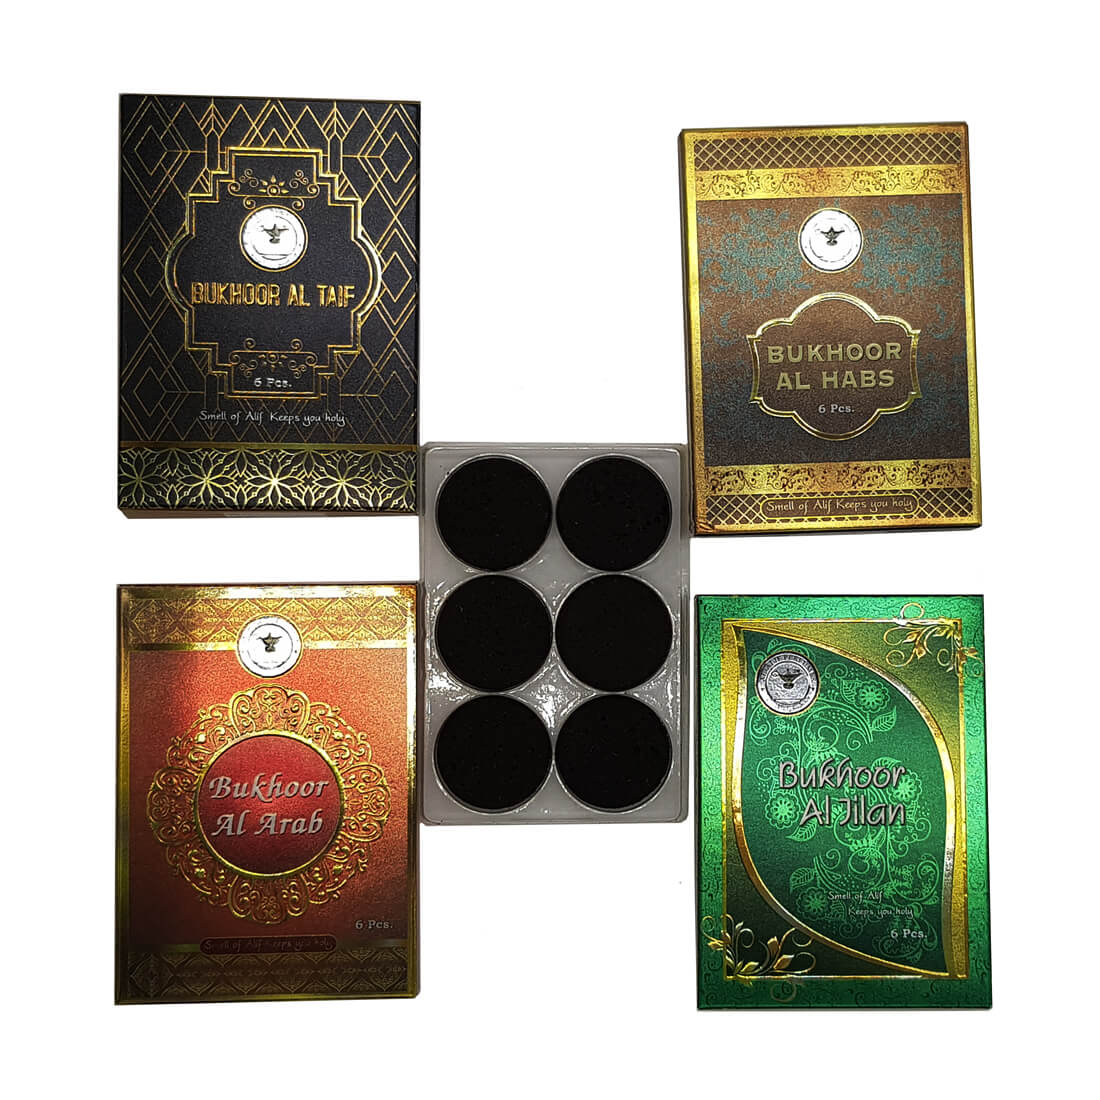 Al Alif Bukhoor Al Arab, Al Taif, Al Habs & Al Jilam Bakhoor Coin 6 pcs Home Fragrance Pack of 4